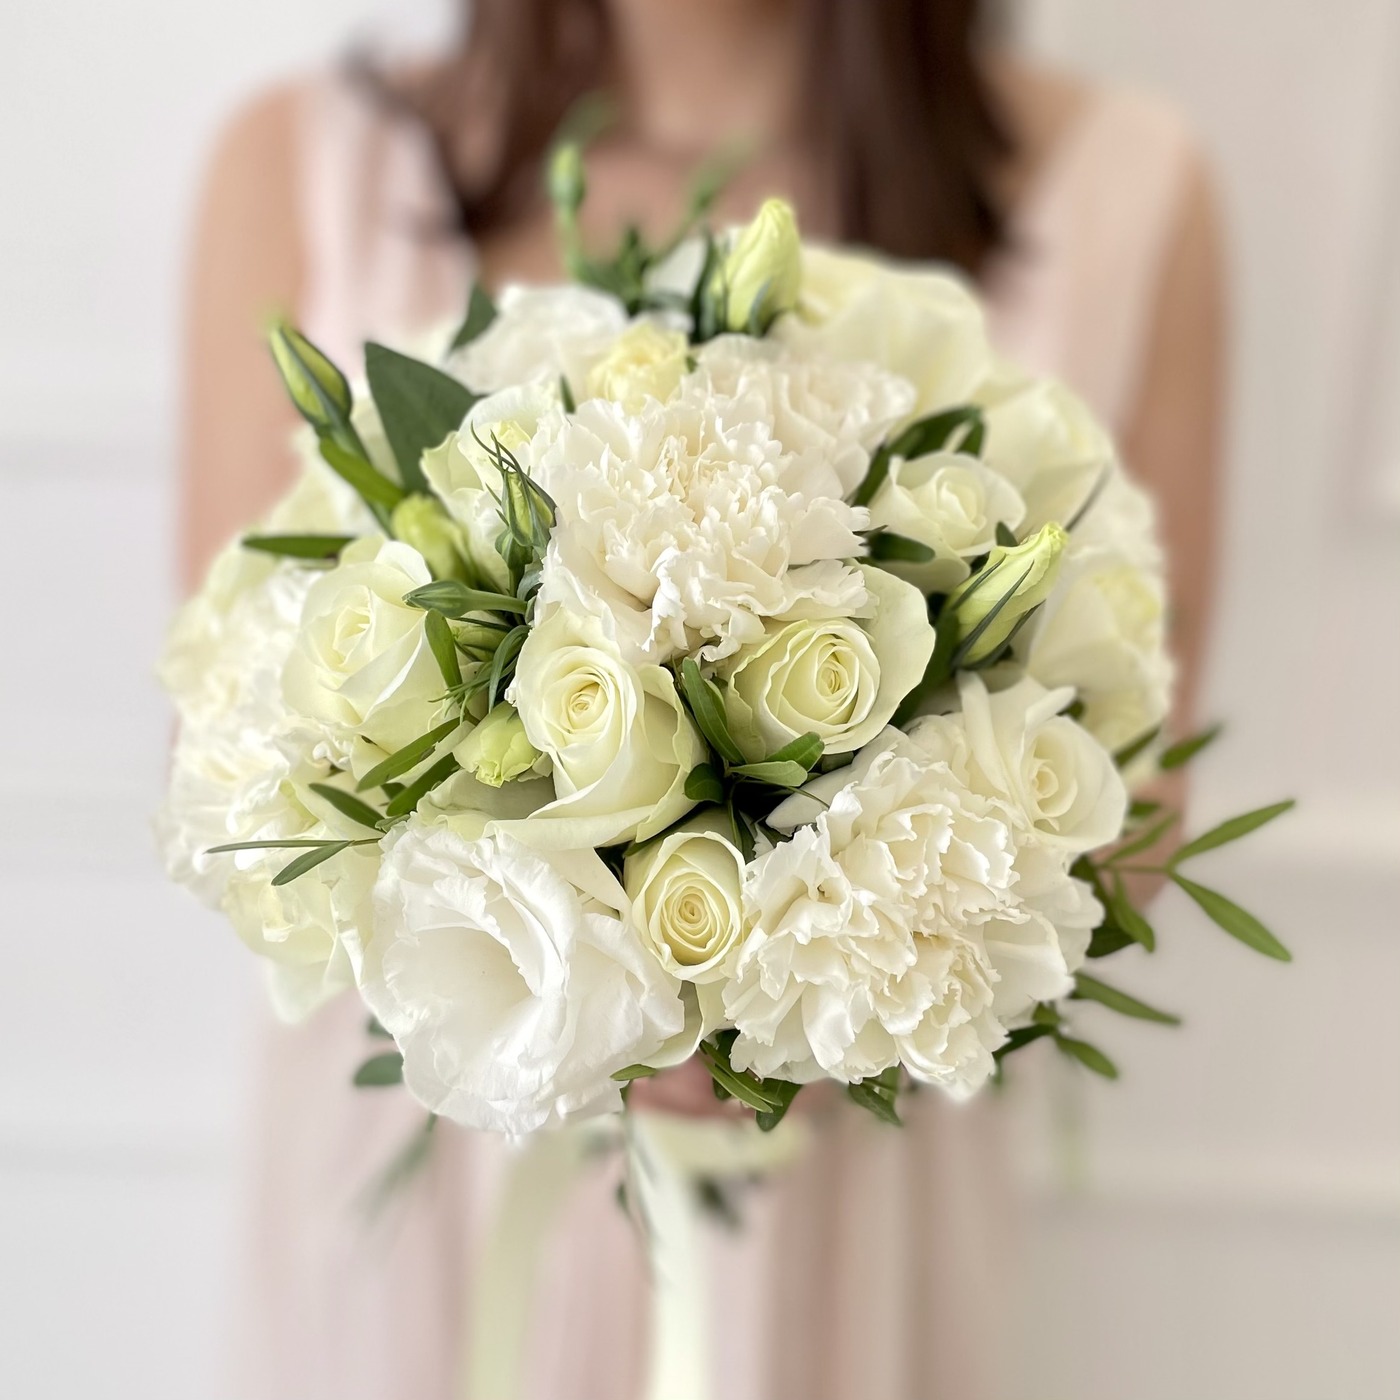 Купить букет невесты из белых роз и гвоздик до 5000 рублей с доставкой по Москве и области